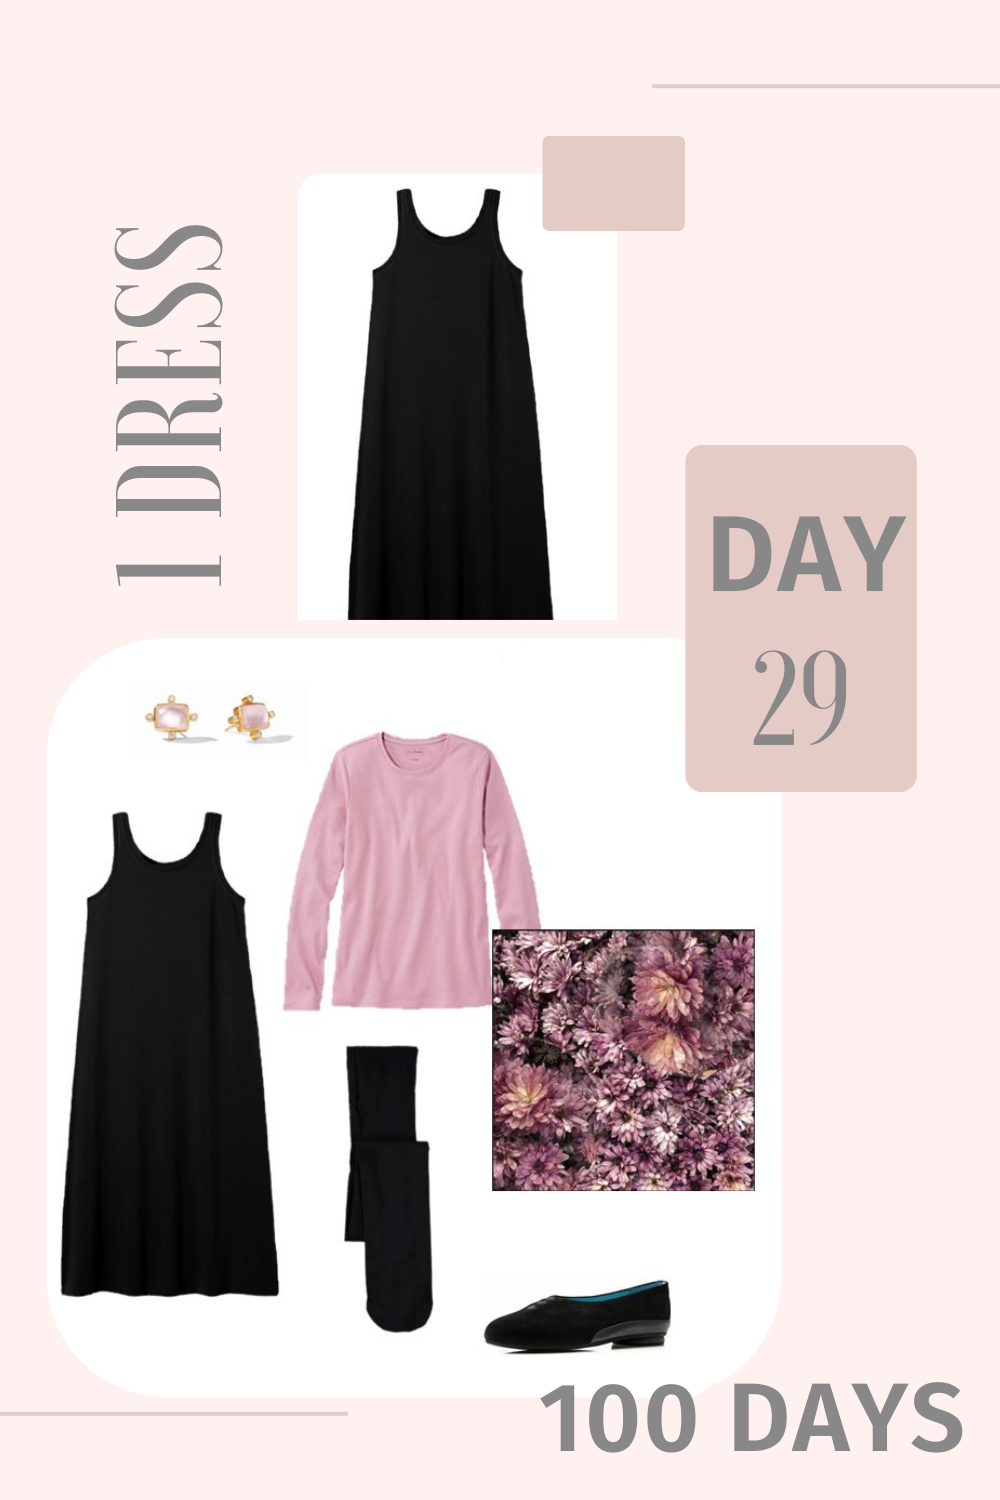 1 Dress 100 Days - Day 29